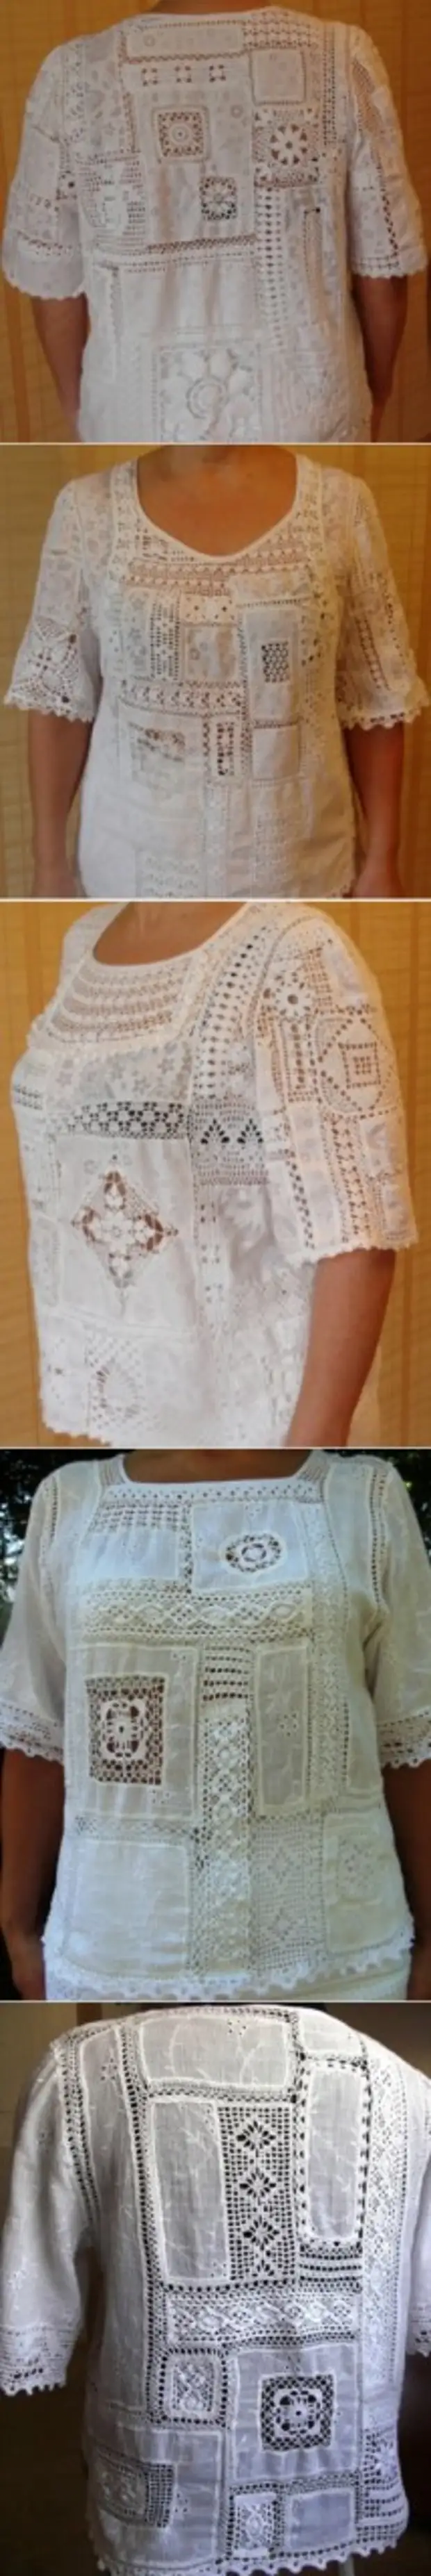 Креативна плетена патцхворк - улаз у корисник Марина у Цроцхет Цоммунити у категорији Женска одећа Цроцхет. Шеме и опис